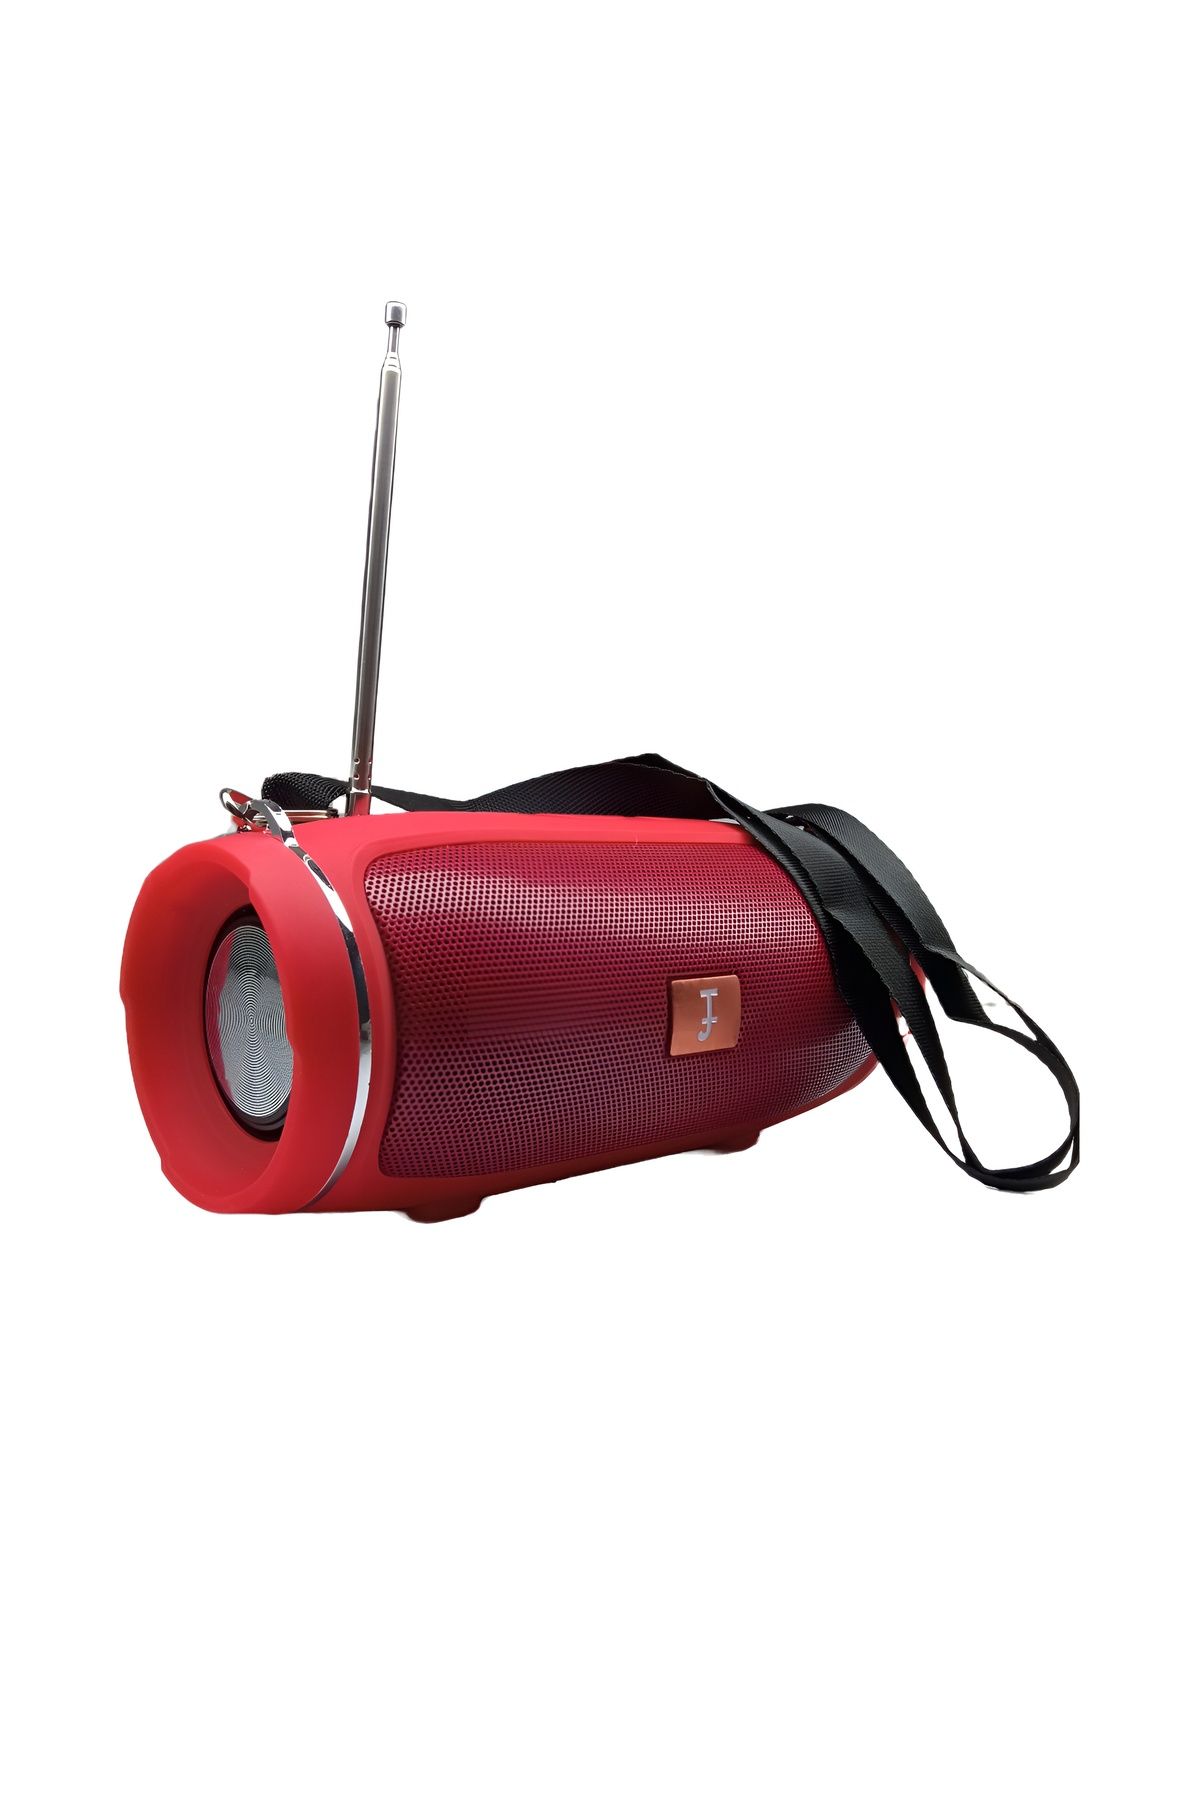 MN6 J009fm Taşınabilir Bluetooth Hoparlör,antenli Fm-radyo Alıcısı,radyo Müzik Çalar